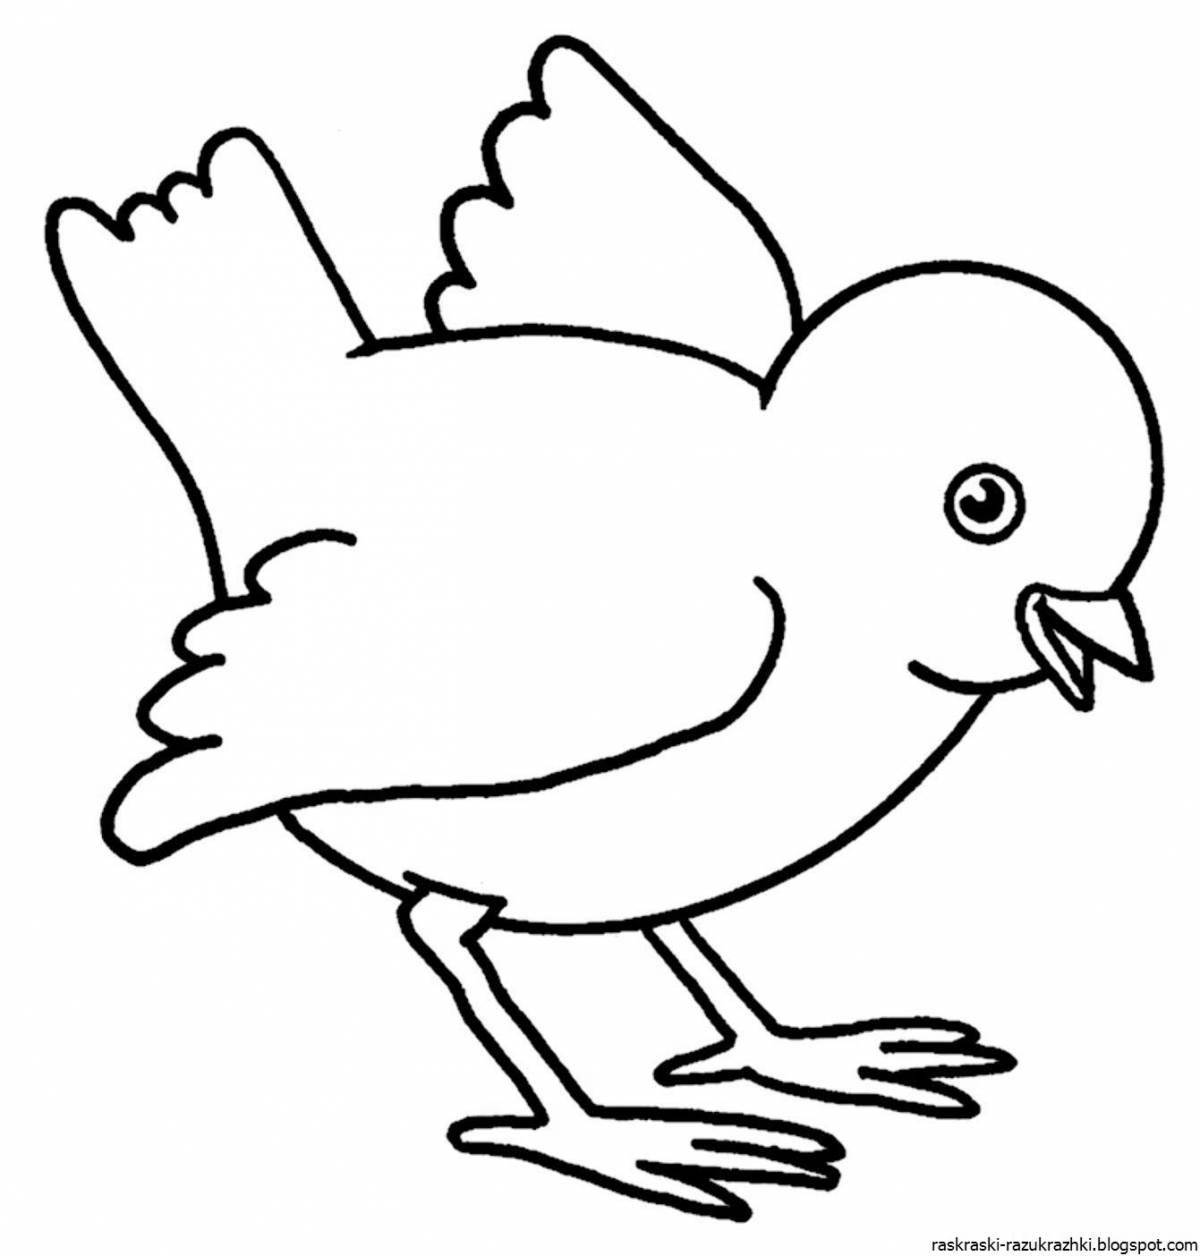 Fun bird drawing for kids